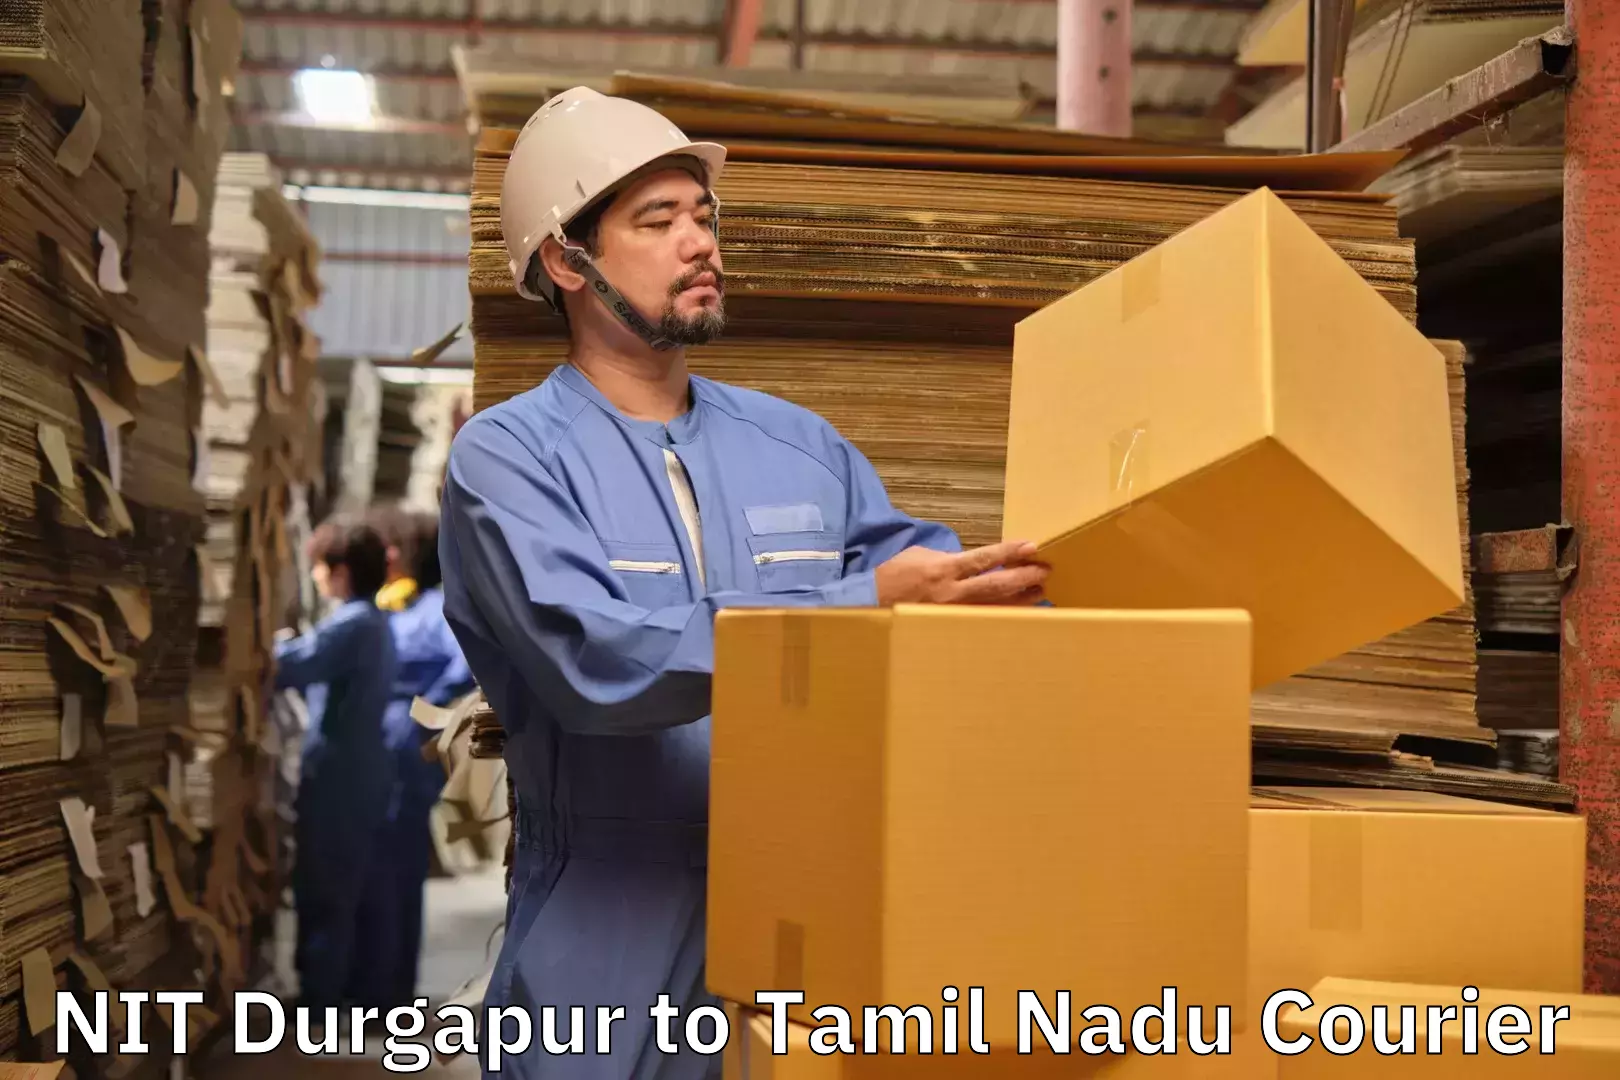 Luggage delivery app NIT Durgapur to Batlagundu